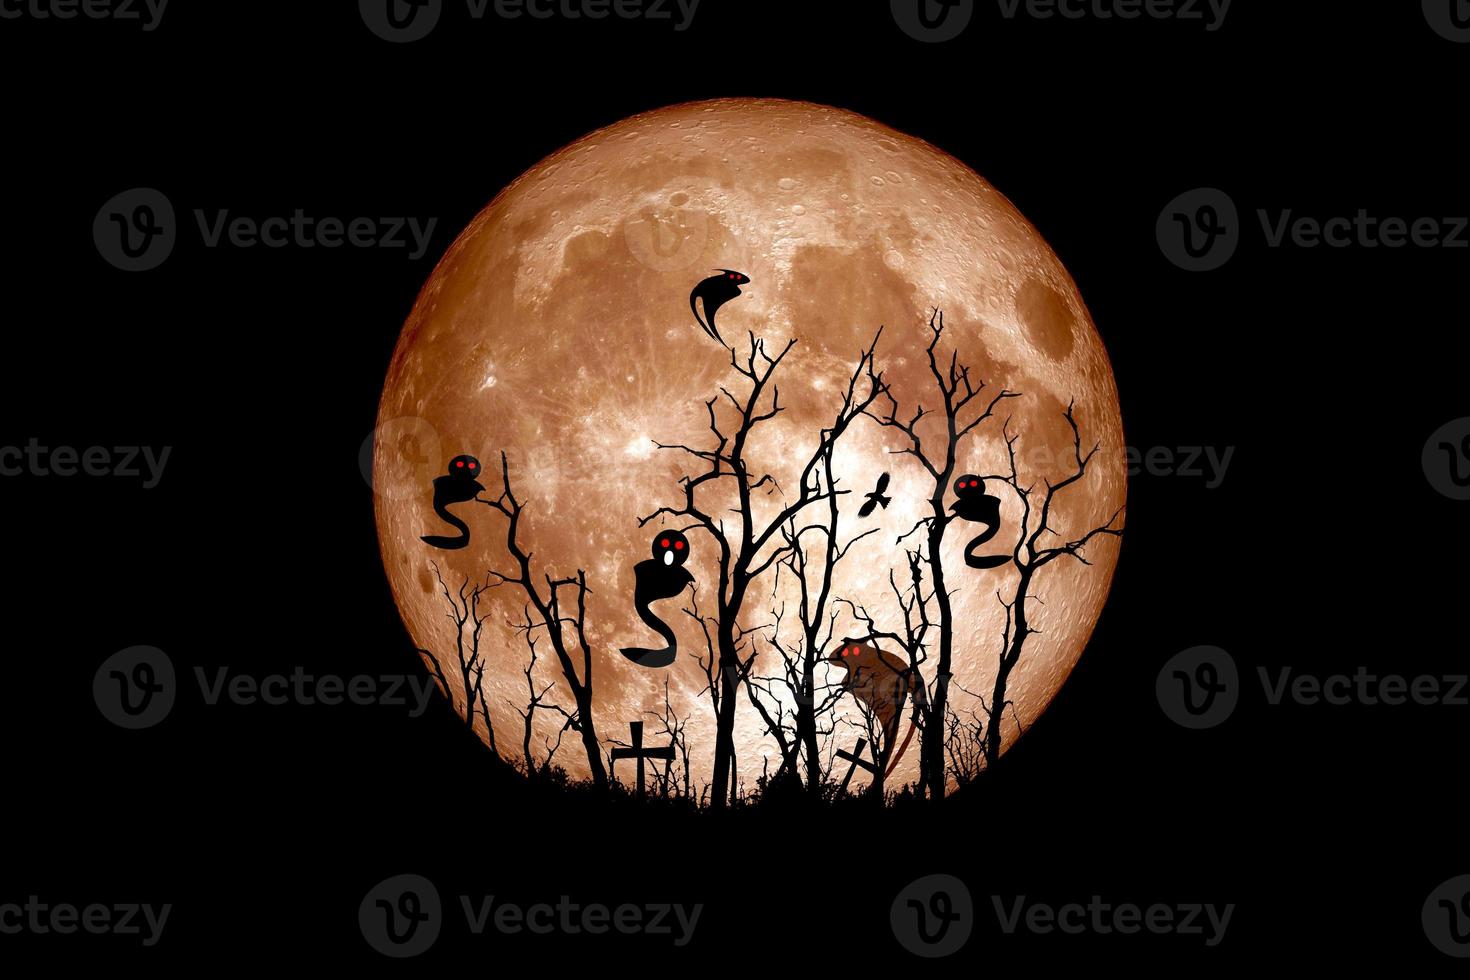 ideia do festival de halloween. fantasma de uma árvore morta com a lua ao fundo. foto